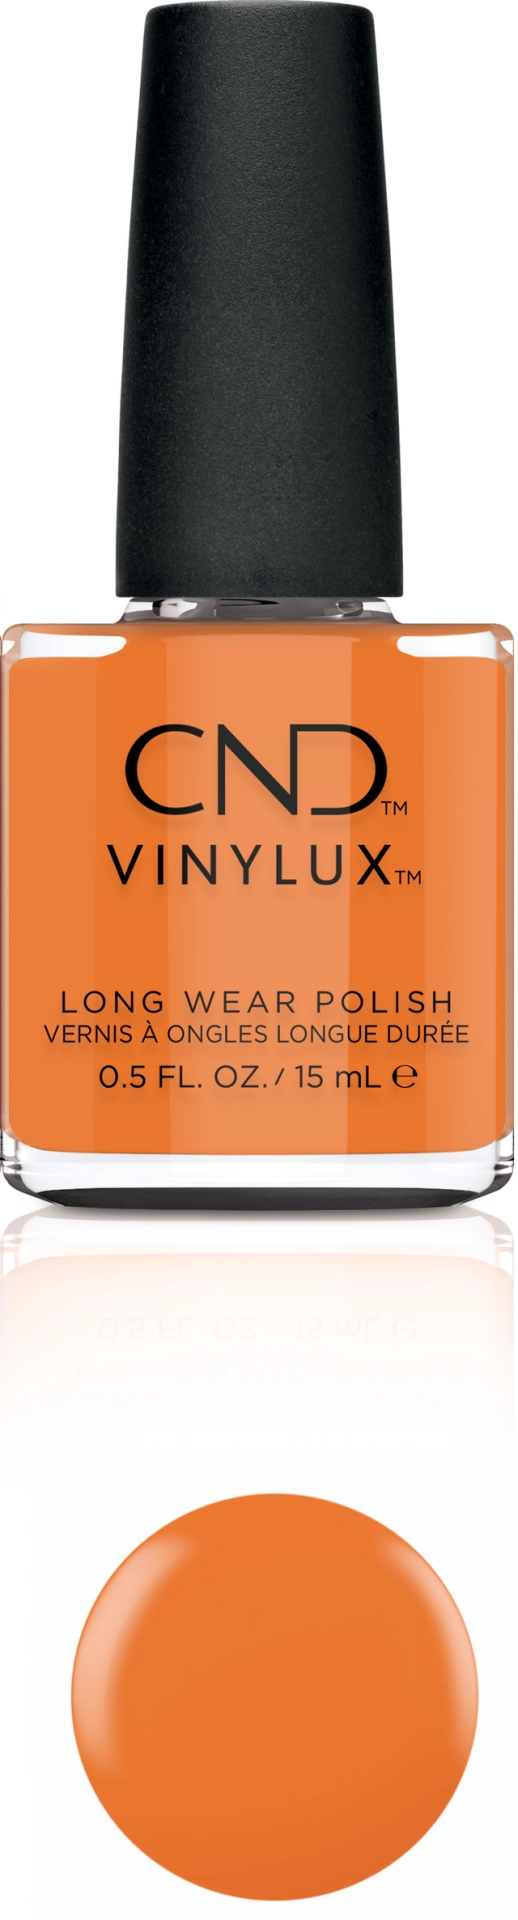 CND – Vinylux Silky Sienna